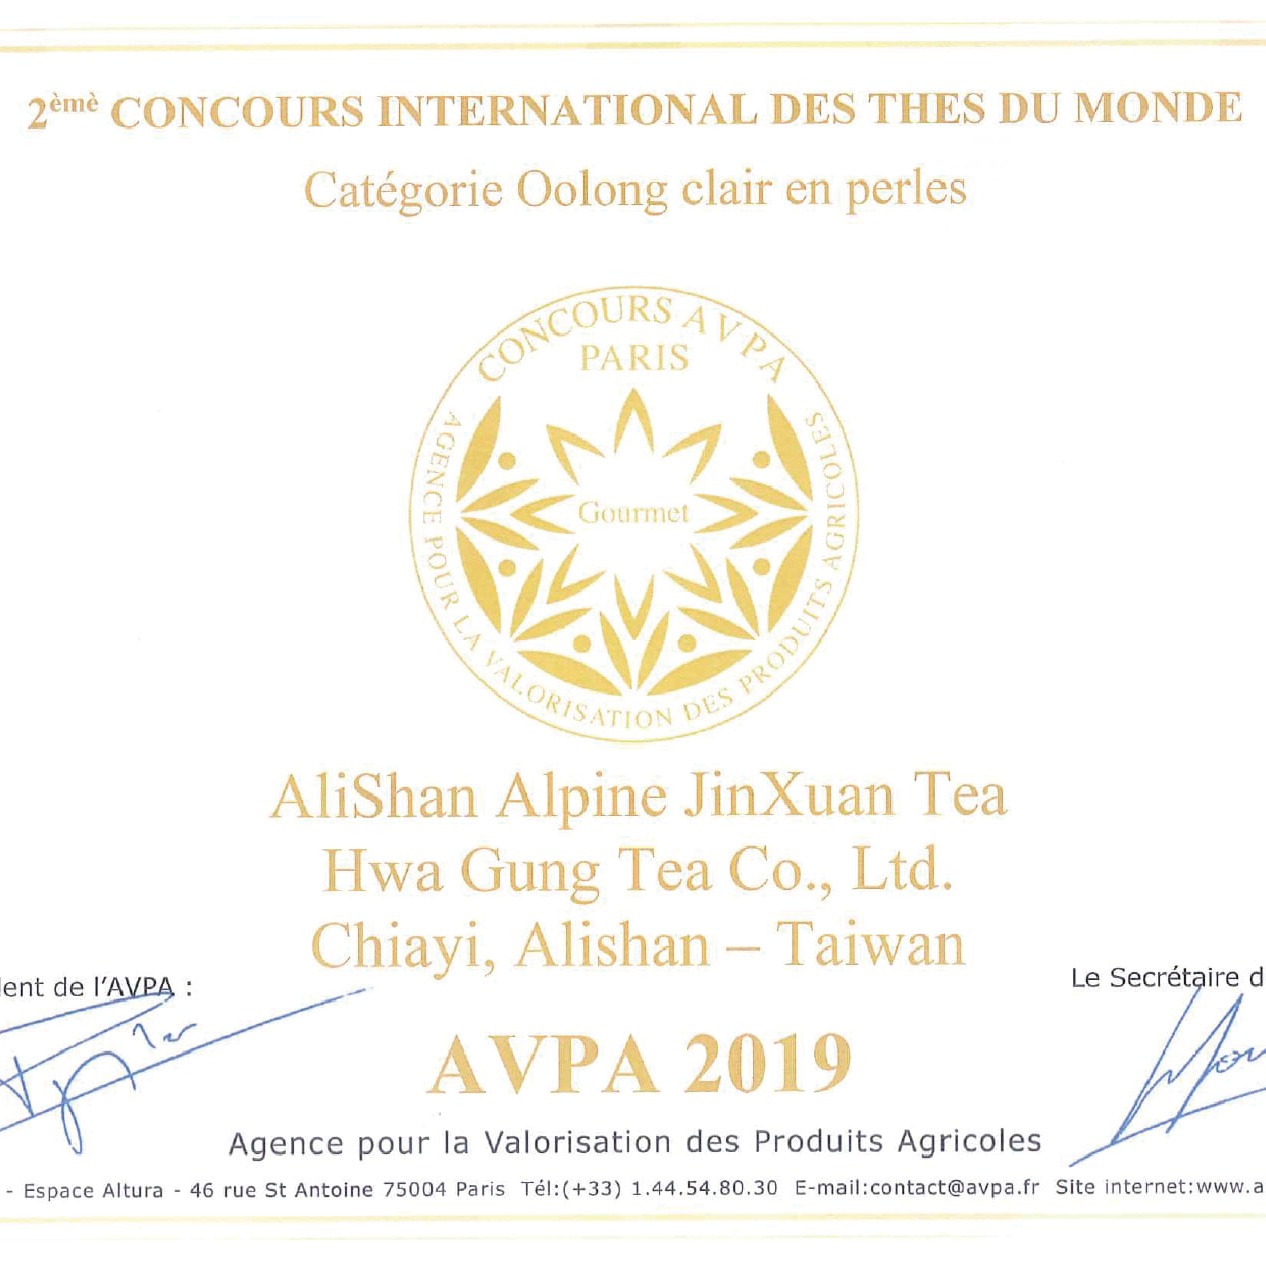 【其他訊息】HGT華剛茶業再度榮獲金牌【2019法國巴黎茶葉大賽】